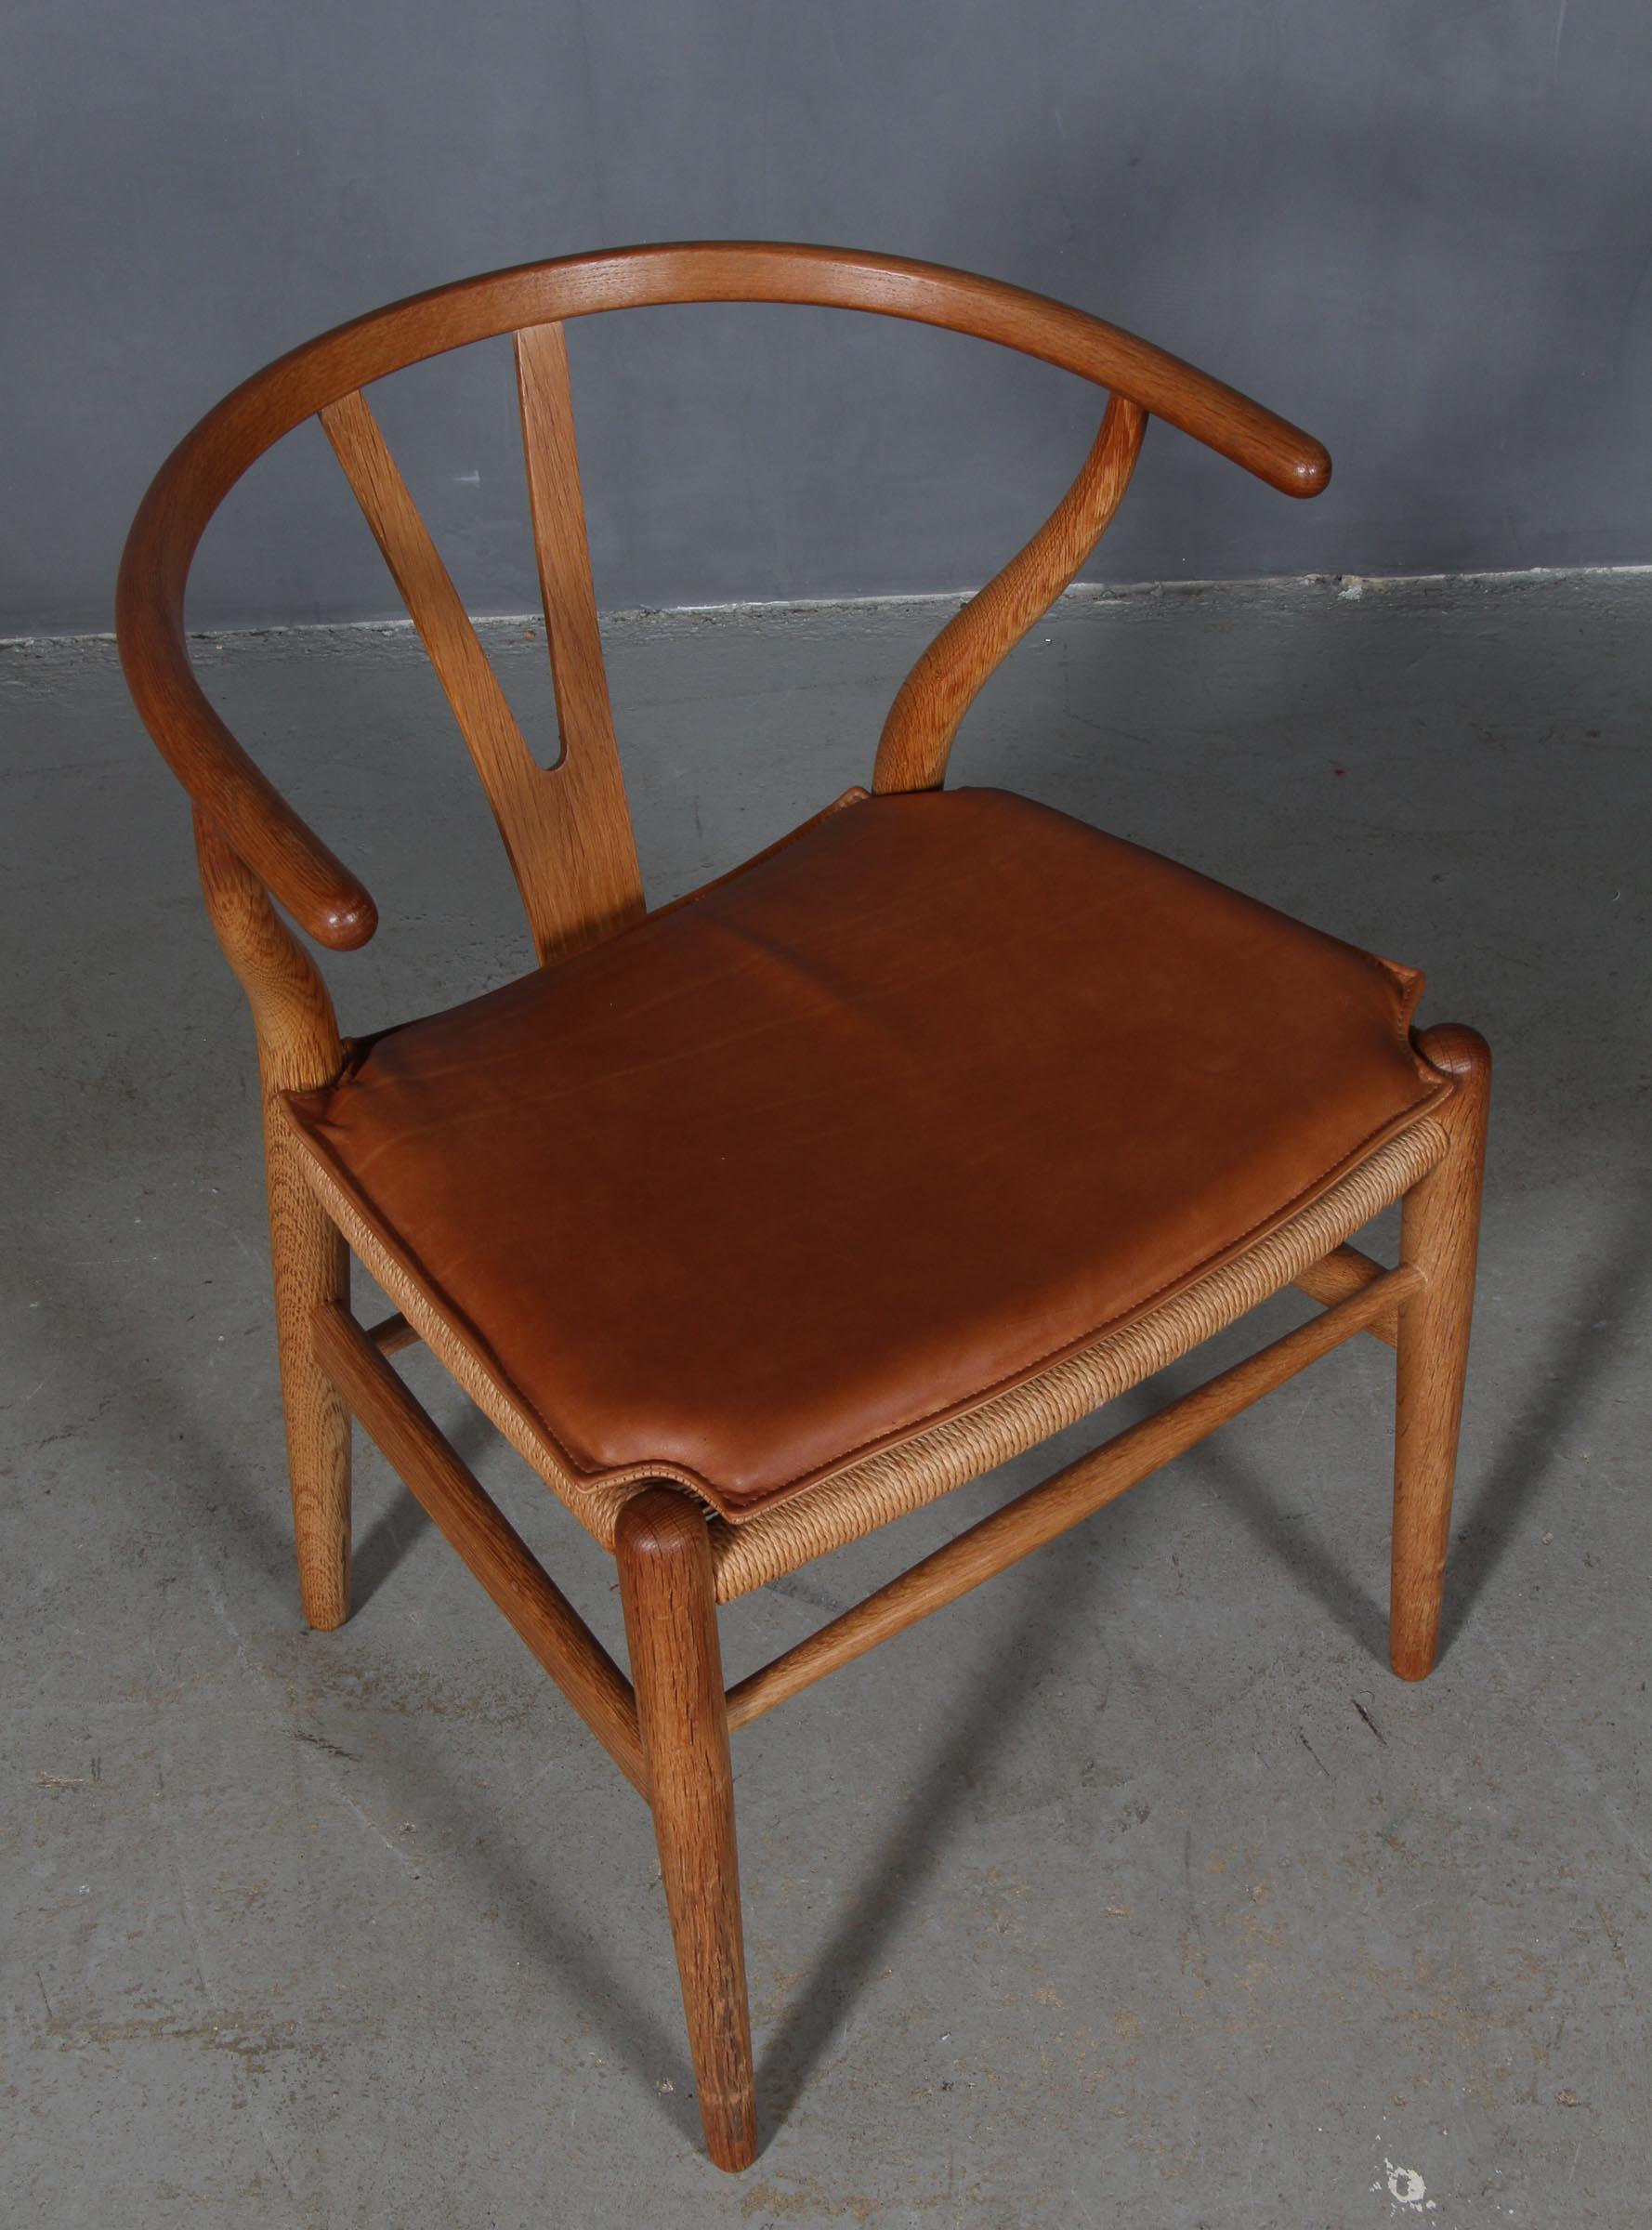 Coussins Hans J. Wegner pour chaise à boudin modèle CH24.

Fabriqué en cuir aniline vintage cognac et en mousse de bonne qualité.

Seulement le coussin, pas la chaise.